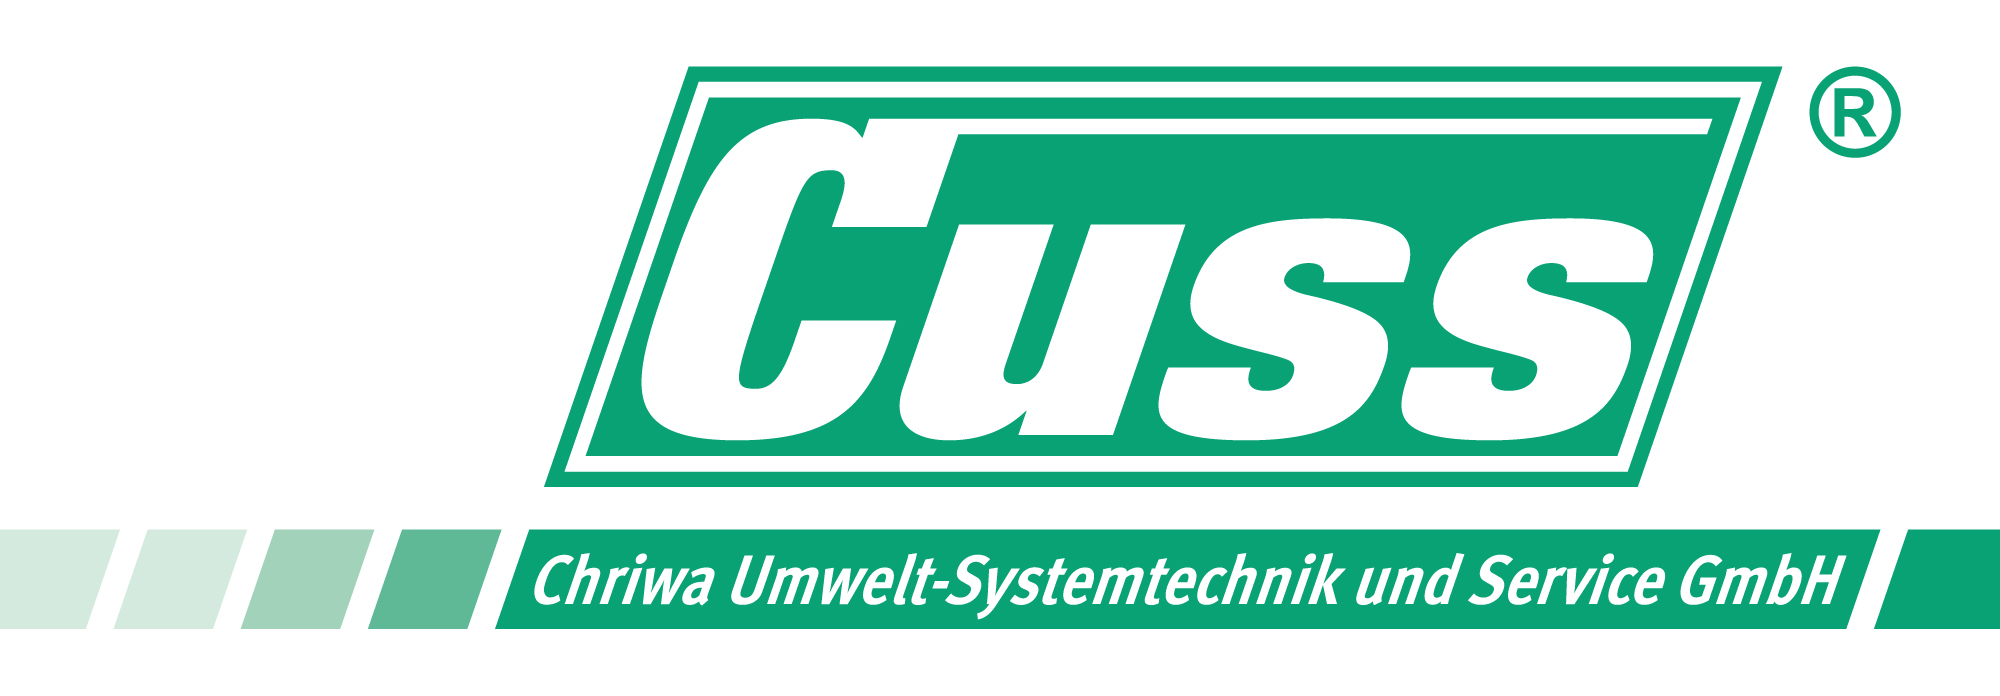 Old CUSS company logo